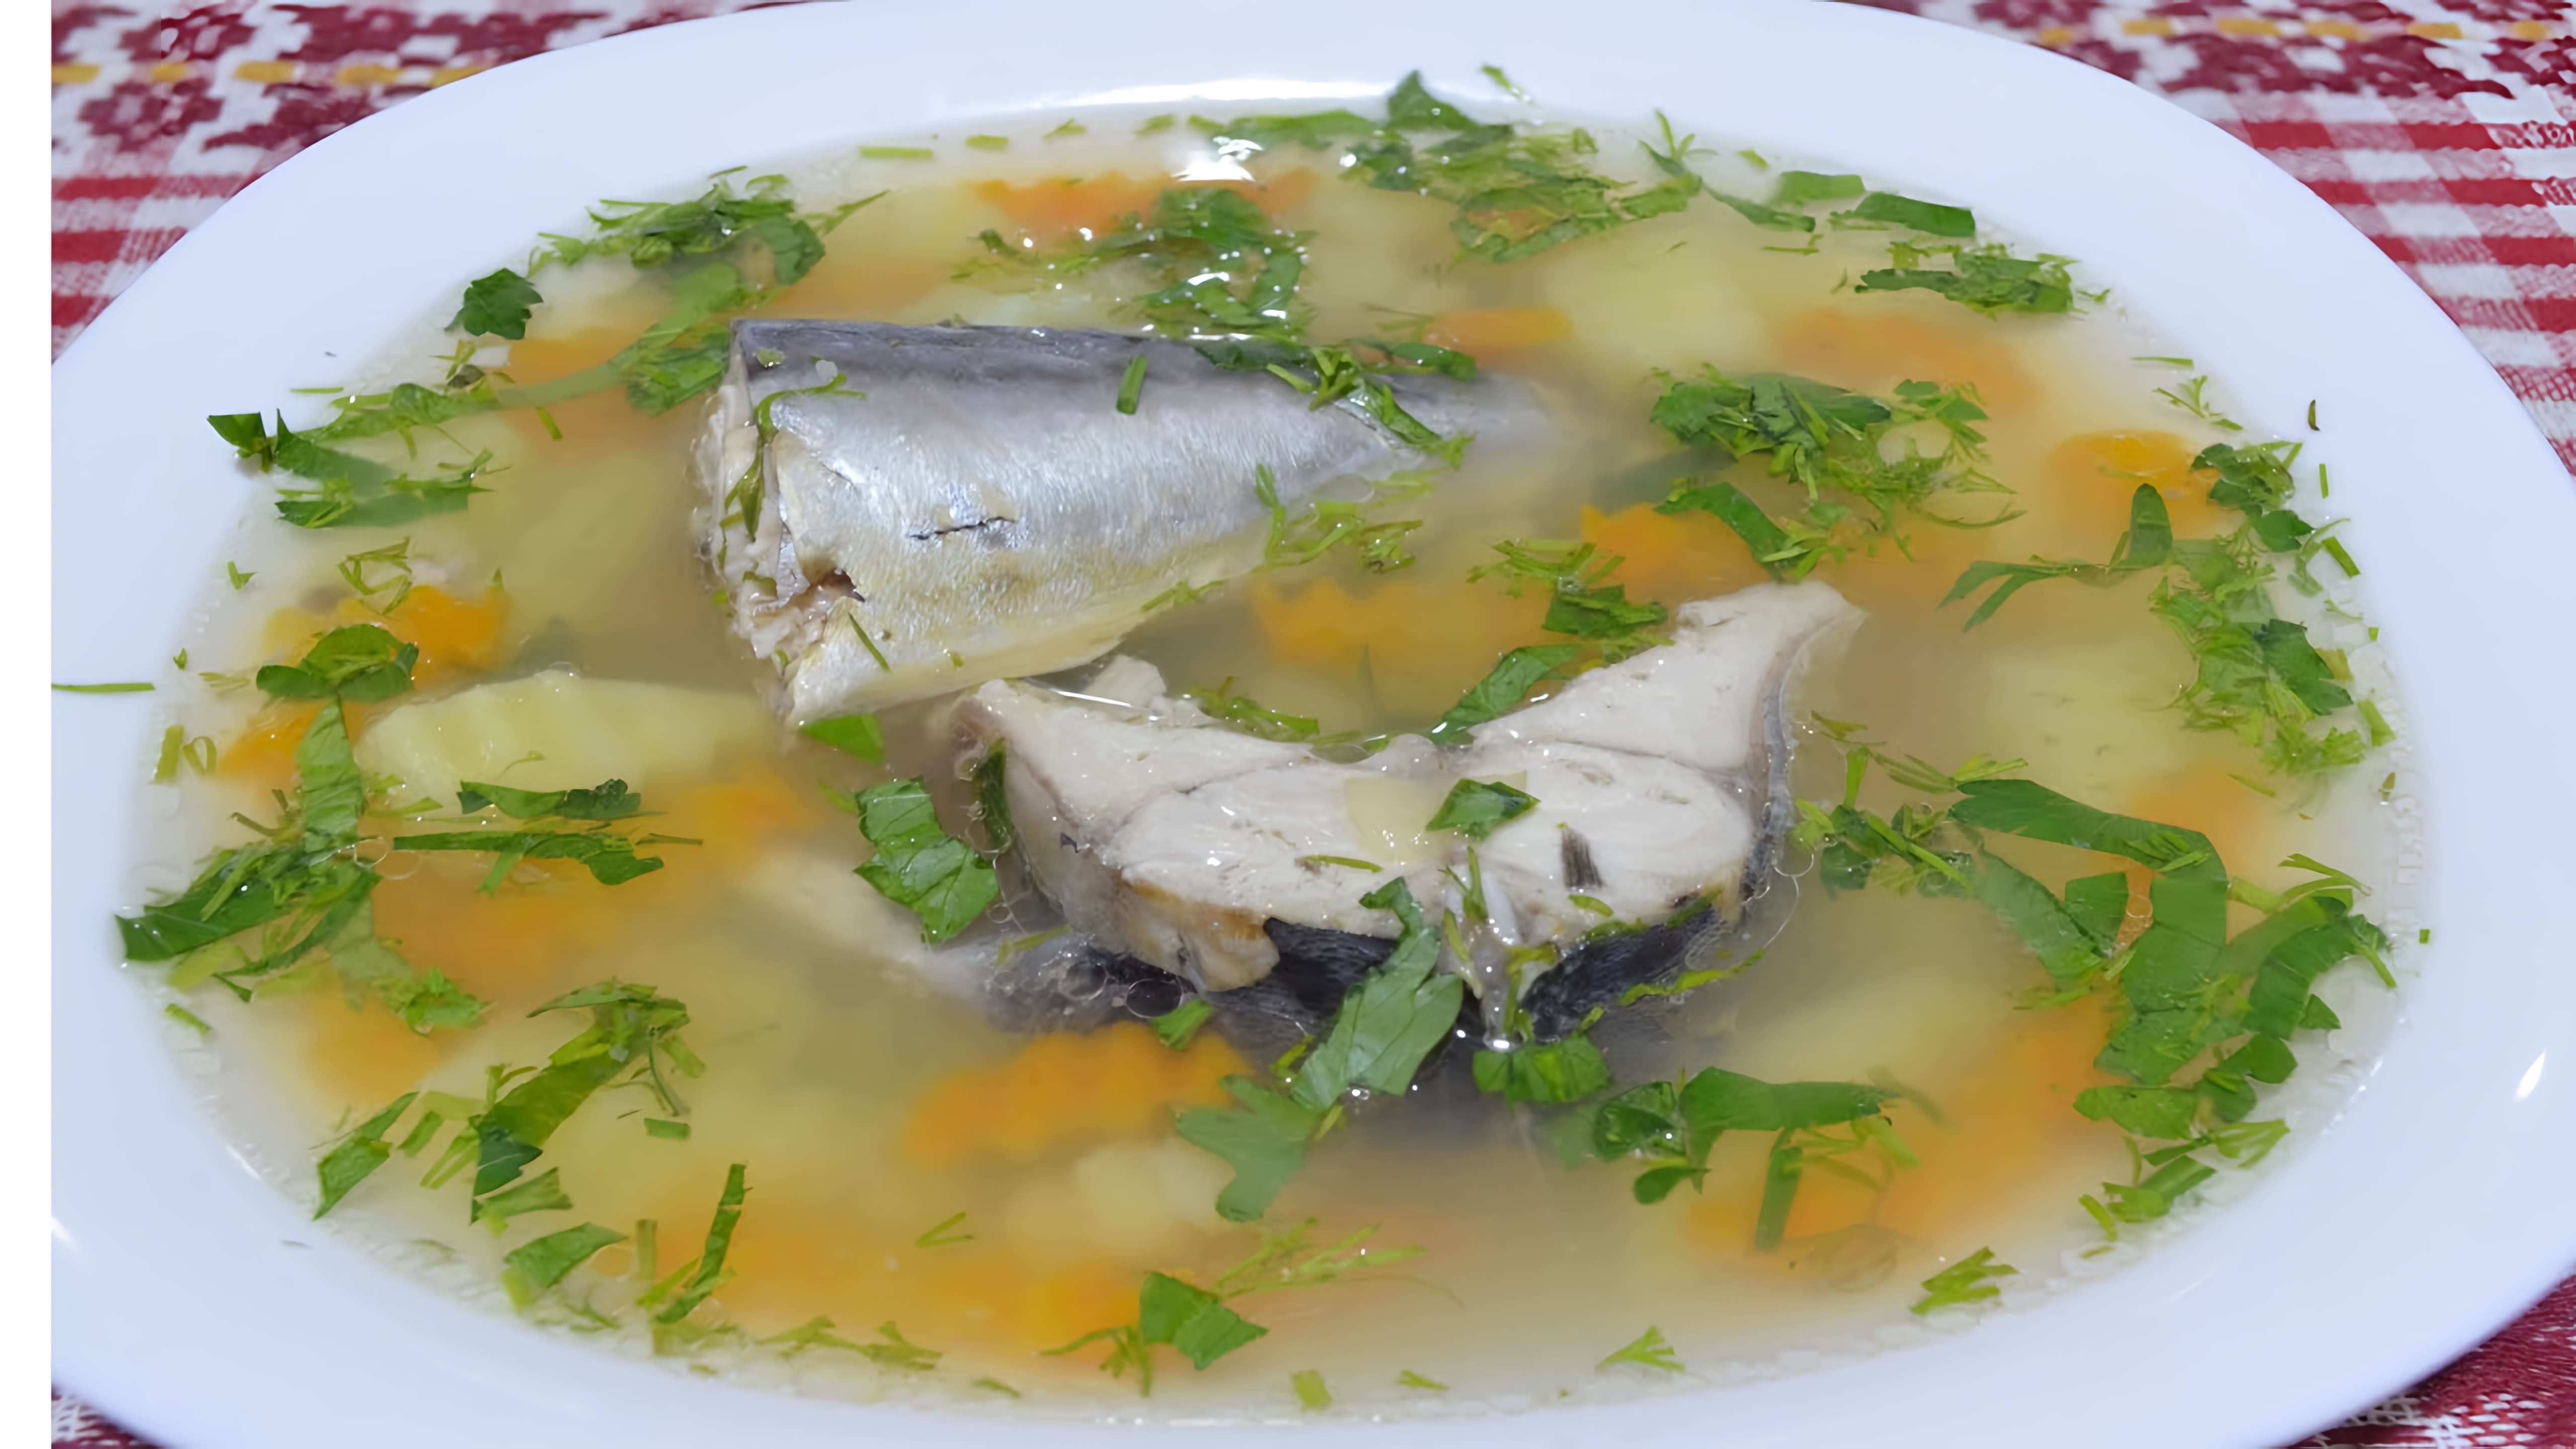 В этом видео демонстрируется процесс приготовления вкусного супа из скумбрии без специфического запаха